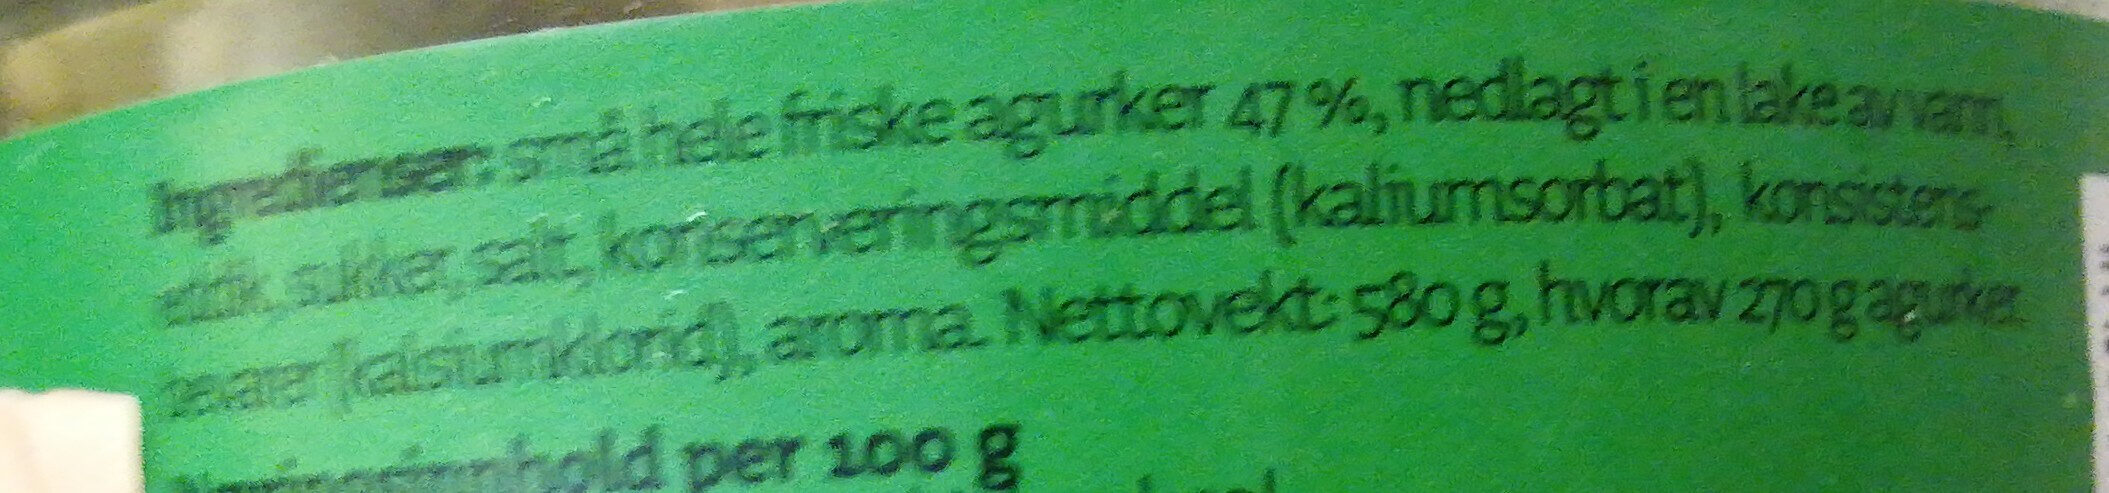 Hele Agurker - Ingredients - nb